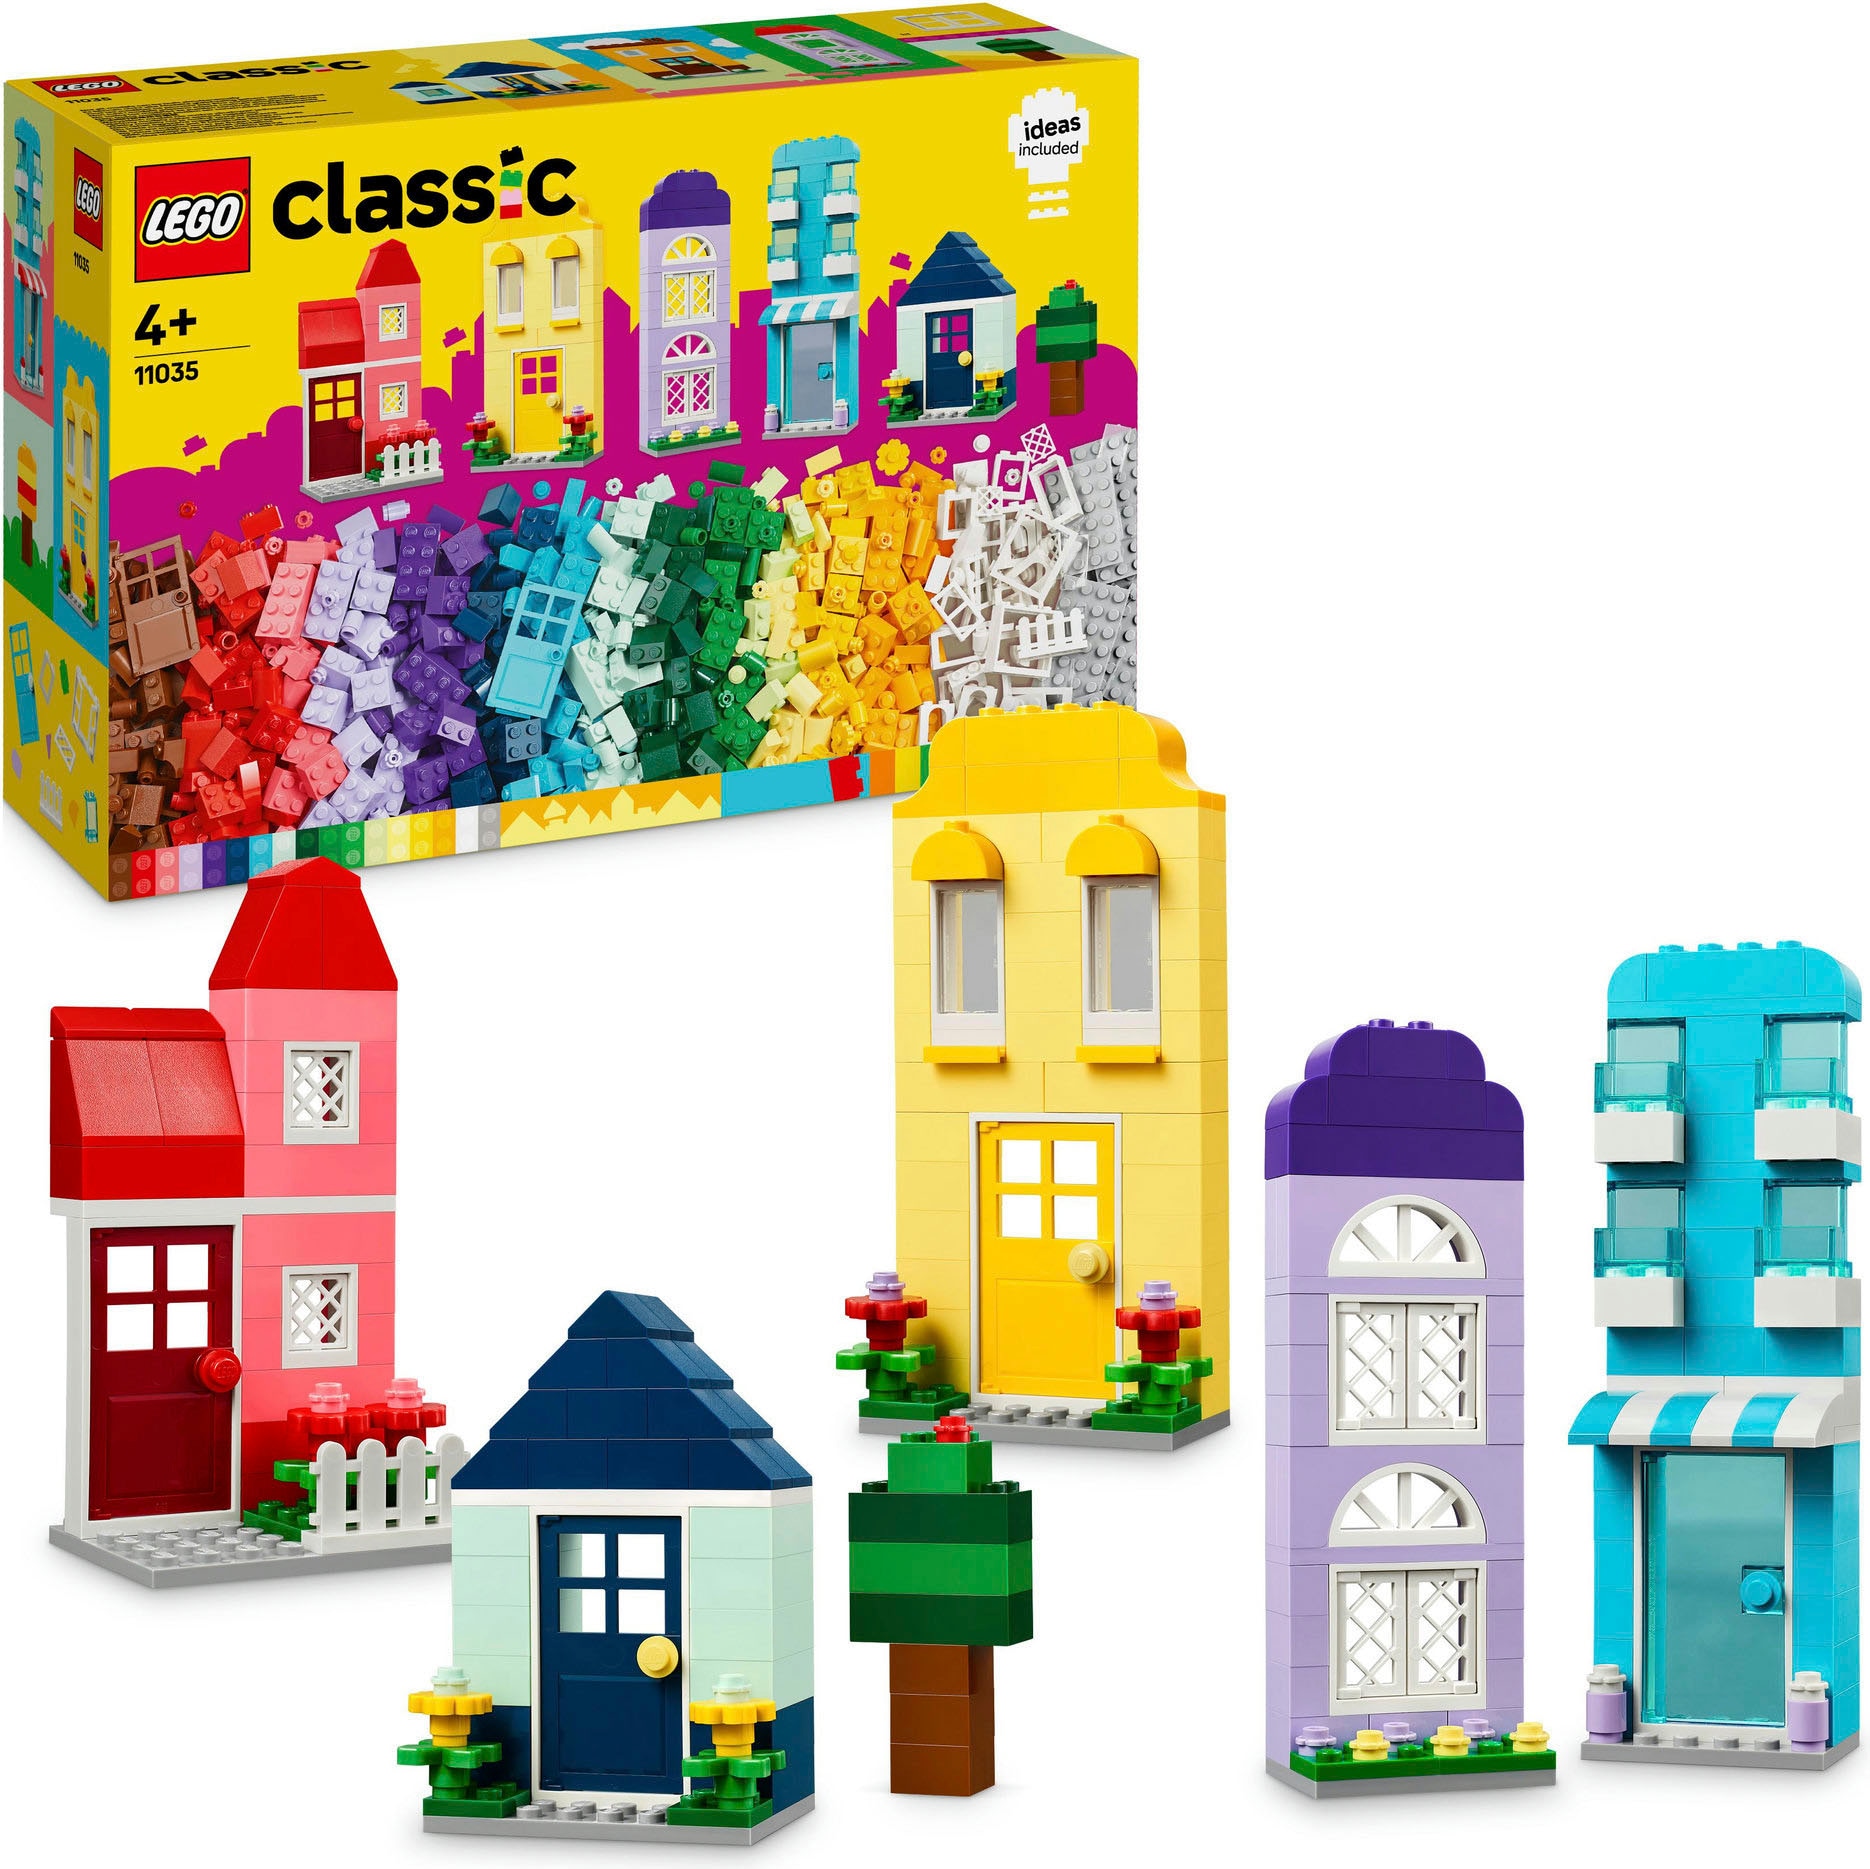 Konstruktionsspielsteine »Kreative Häuser (11035), LEGO Classic«, (850 St.), Made in...